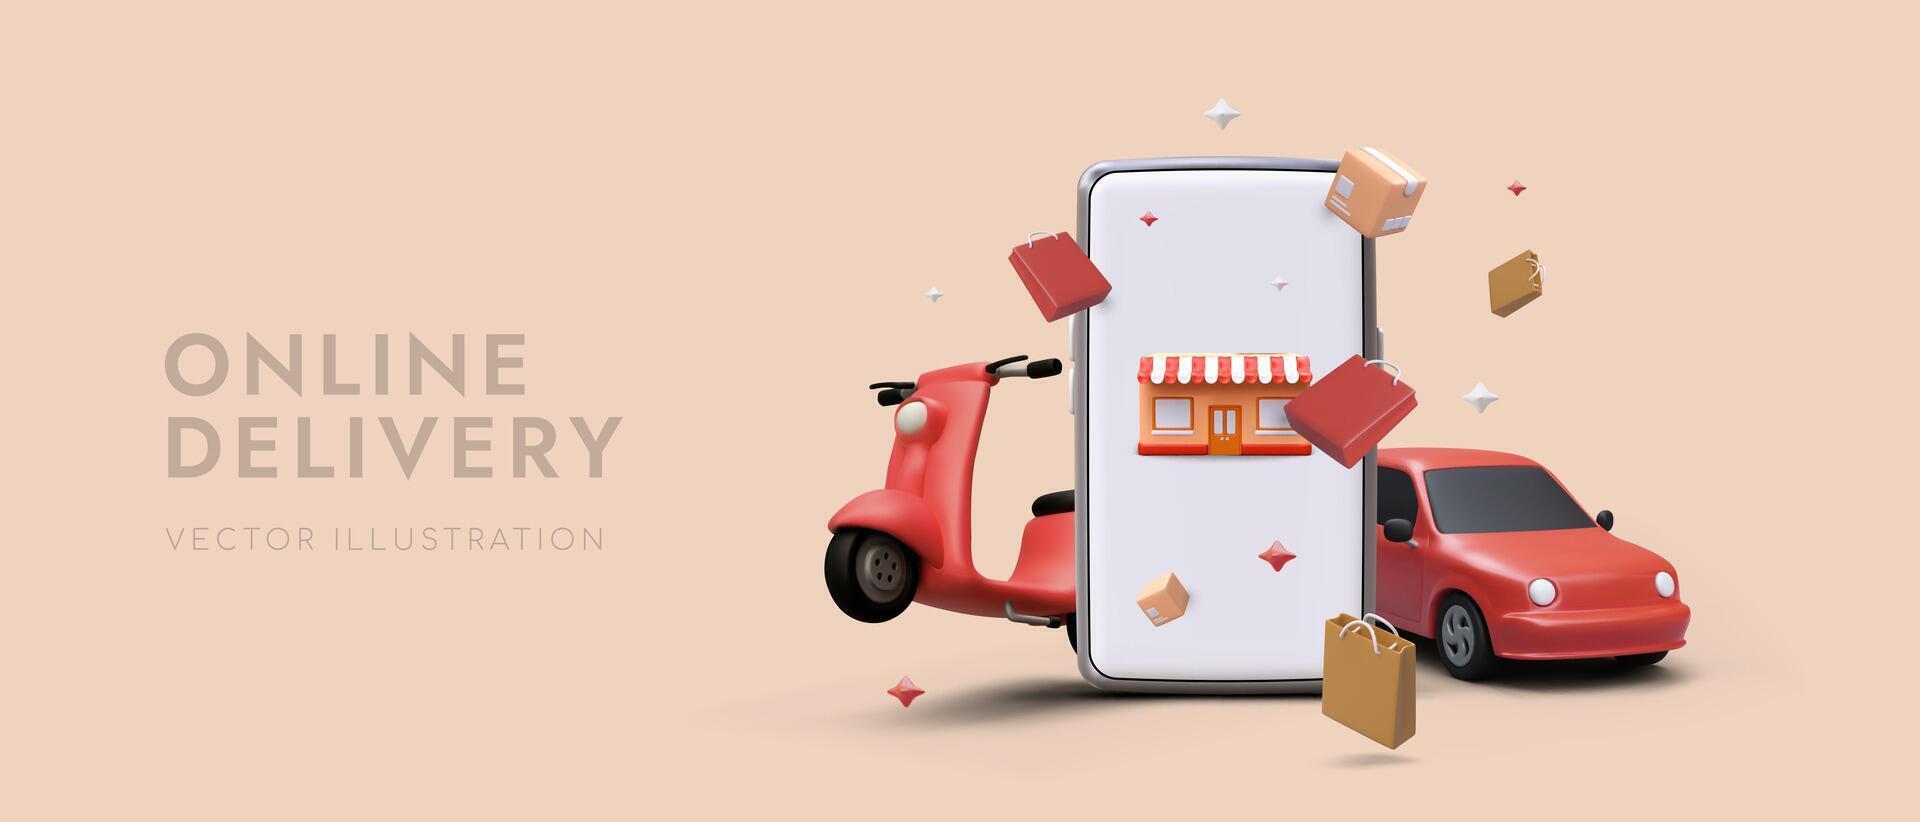 dibujos animados teléfono inteligente con rojo scooter y coche. compras en línea en supermercado, ordenando rápido entrega vector